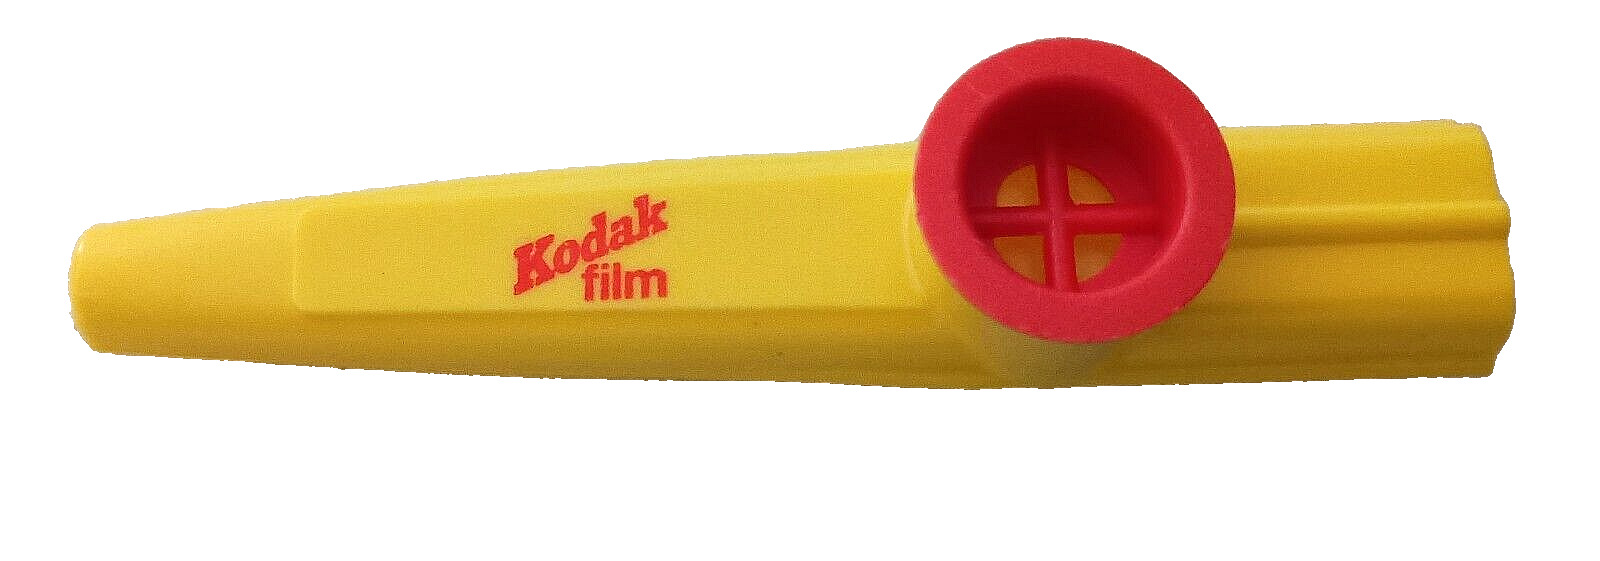 Vtg Promotional Kodak Film Advertising Promo Plastic Kazoo 1970s NOS New